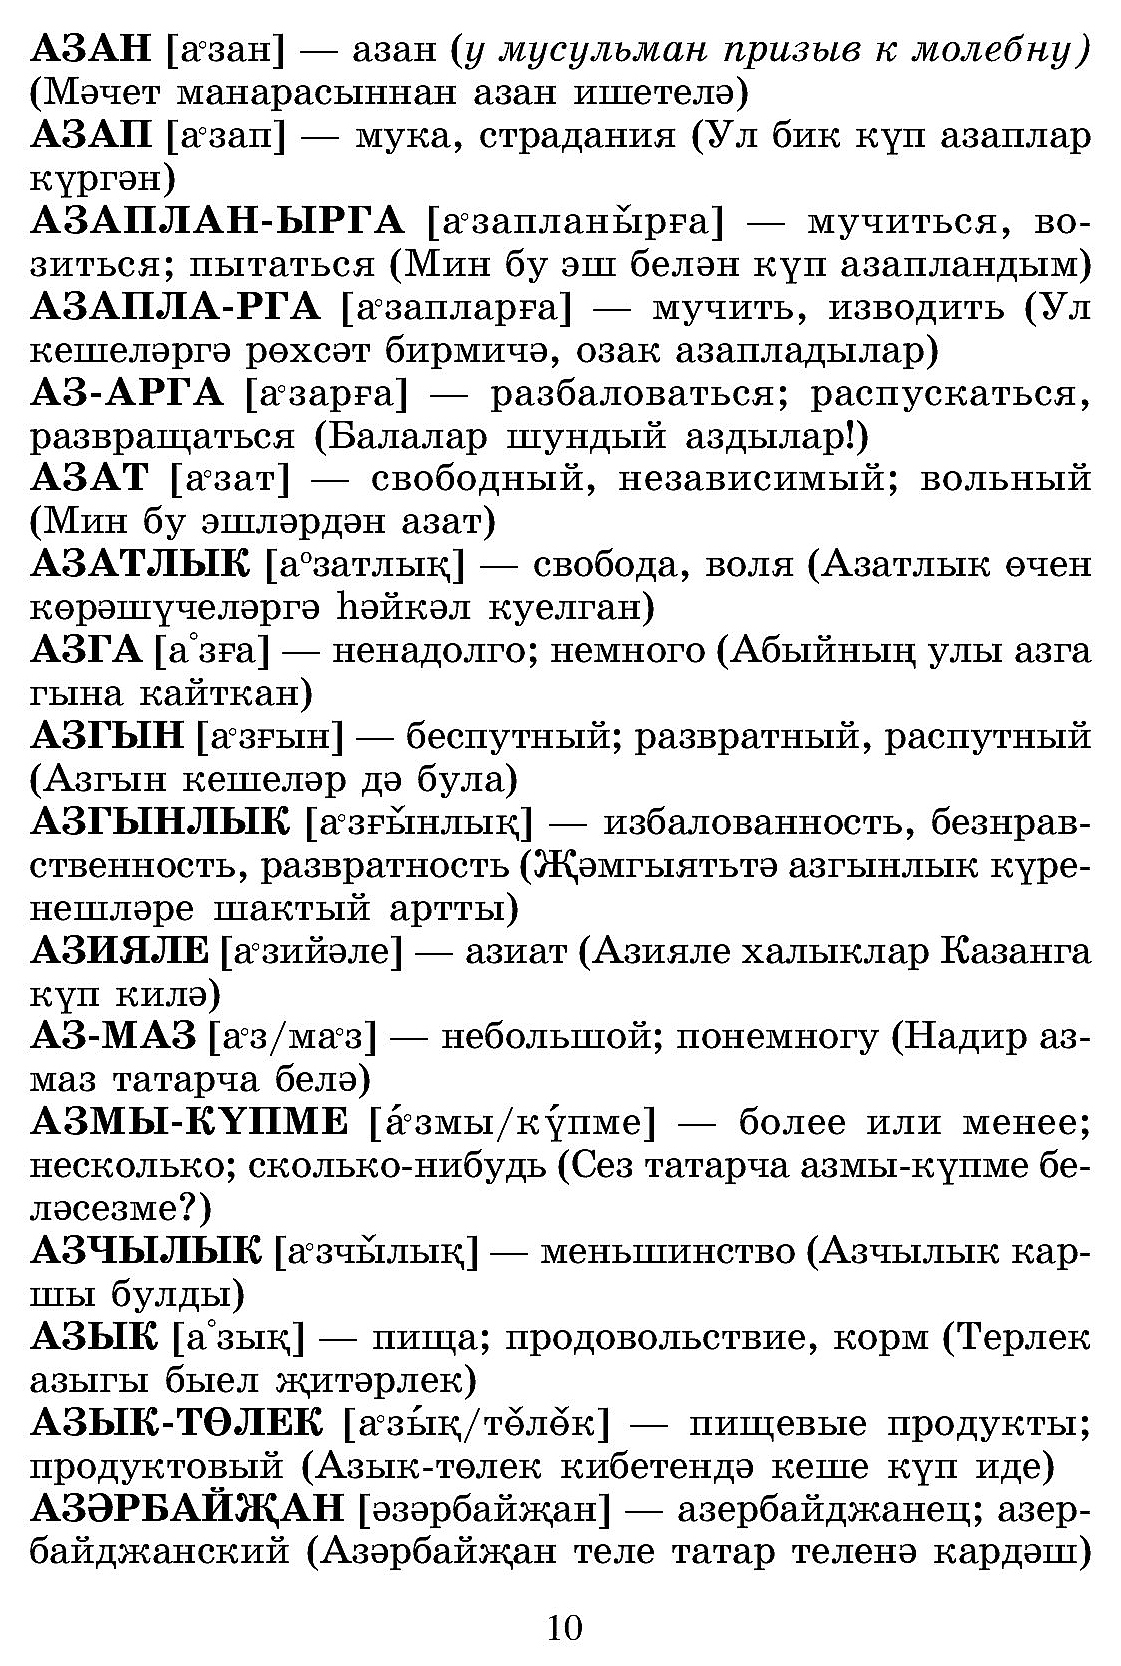 поговорка в татарский, перевод, русский - татарский словарь | Glosbe